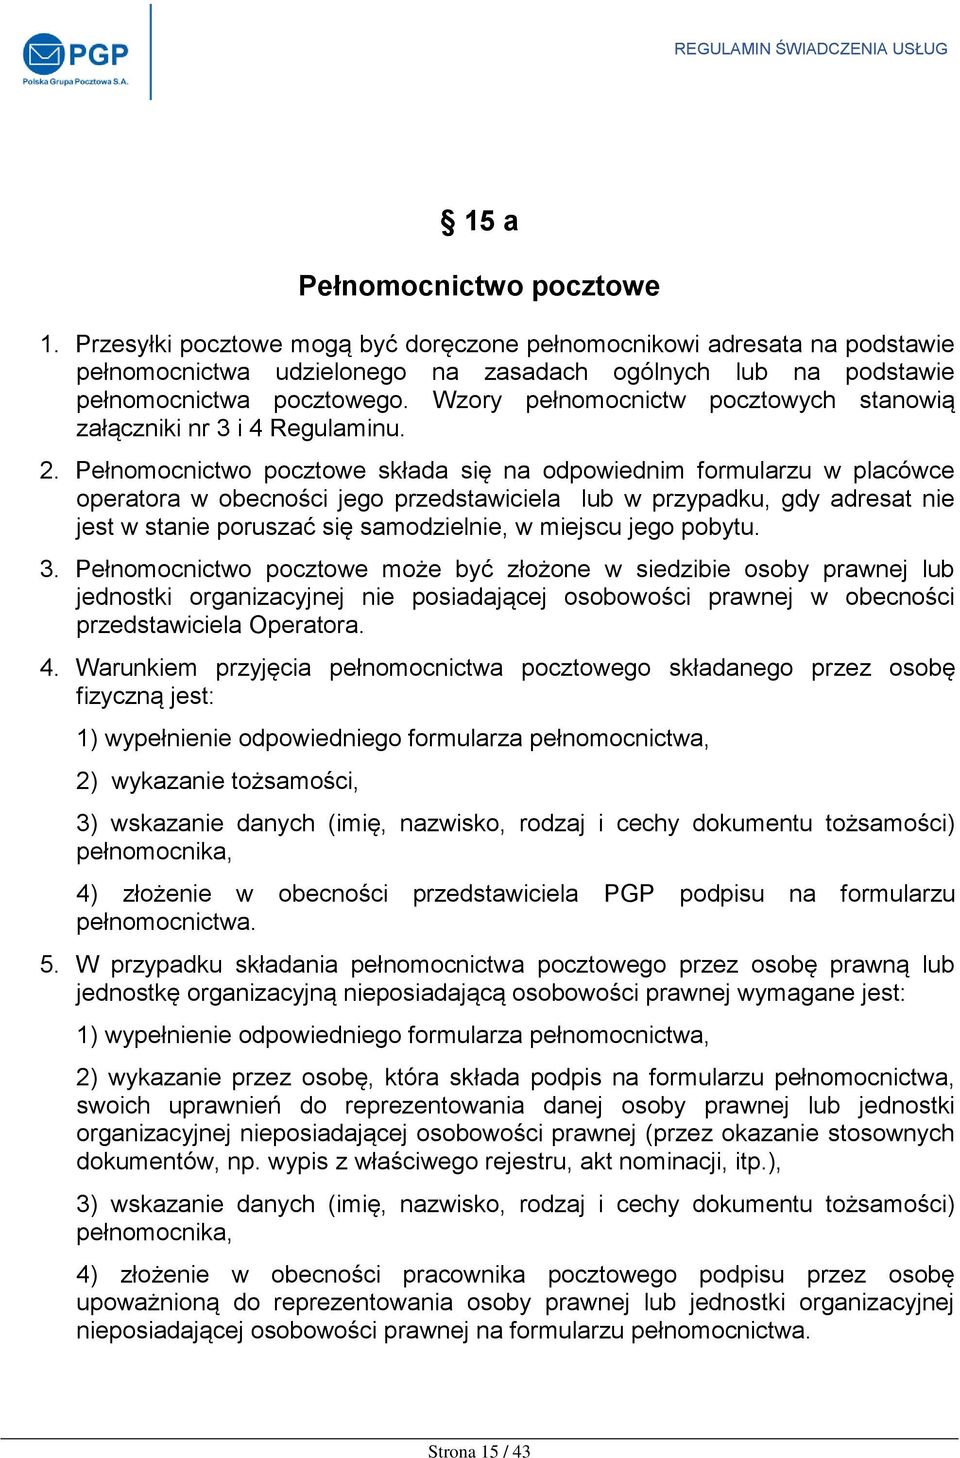 REGULAMIN. świadczenia usług przez Polską Grupę Pocztową S.A. - PDF Darmowe  pobieranie